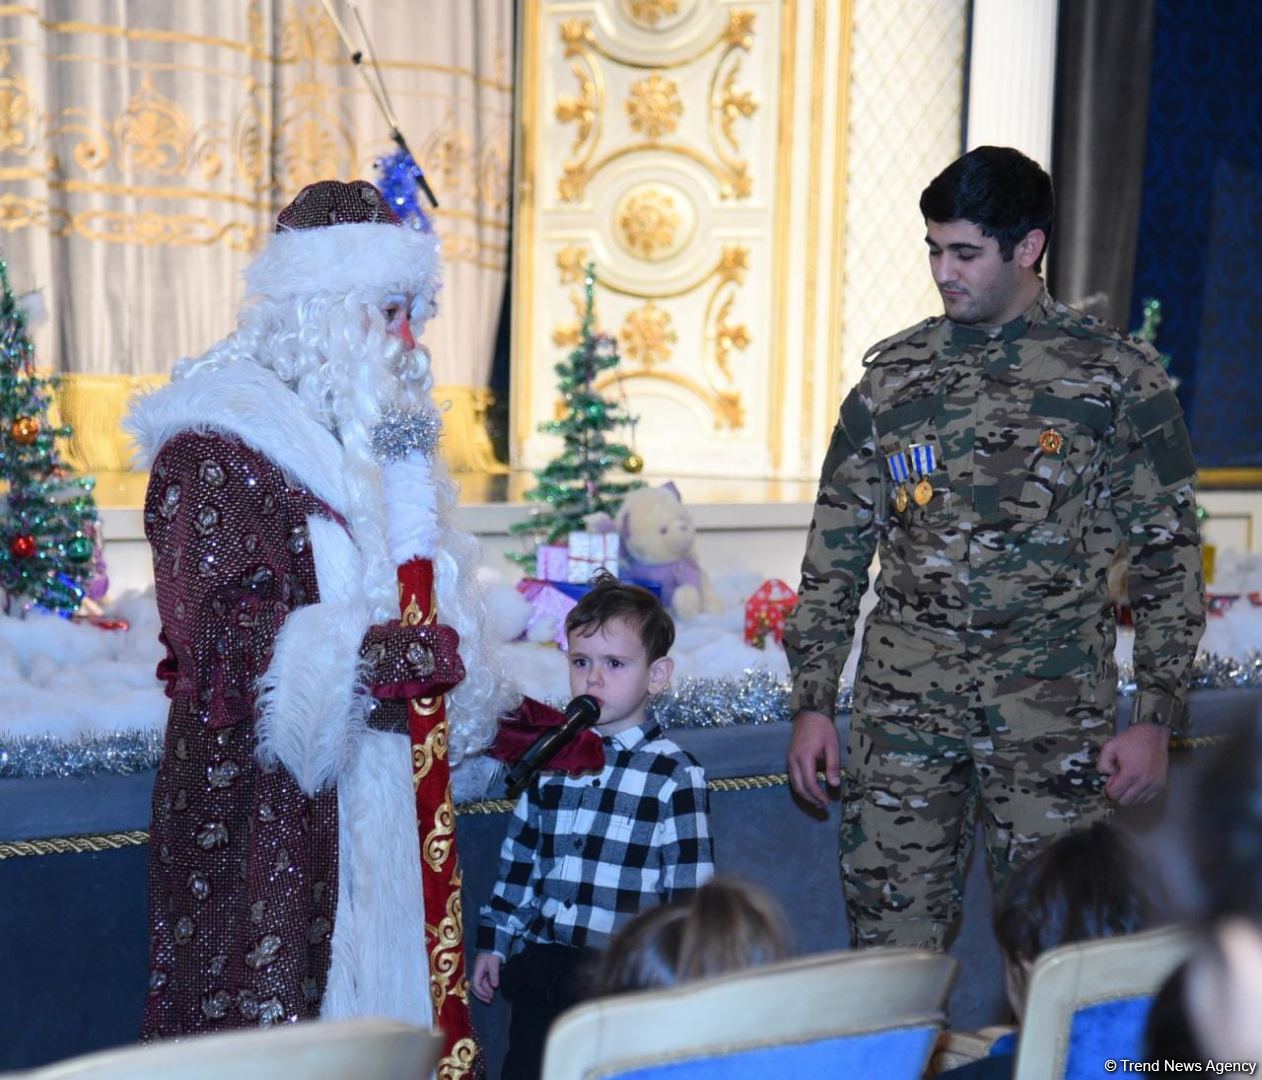 Как прошли новогодние праздники в Азербайджанском музыкальном театре (ФОТО)